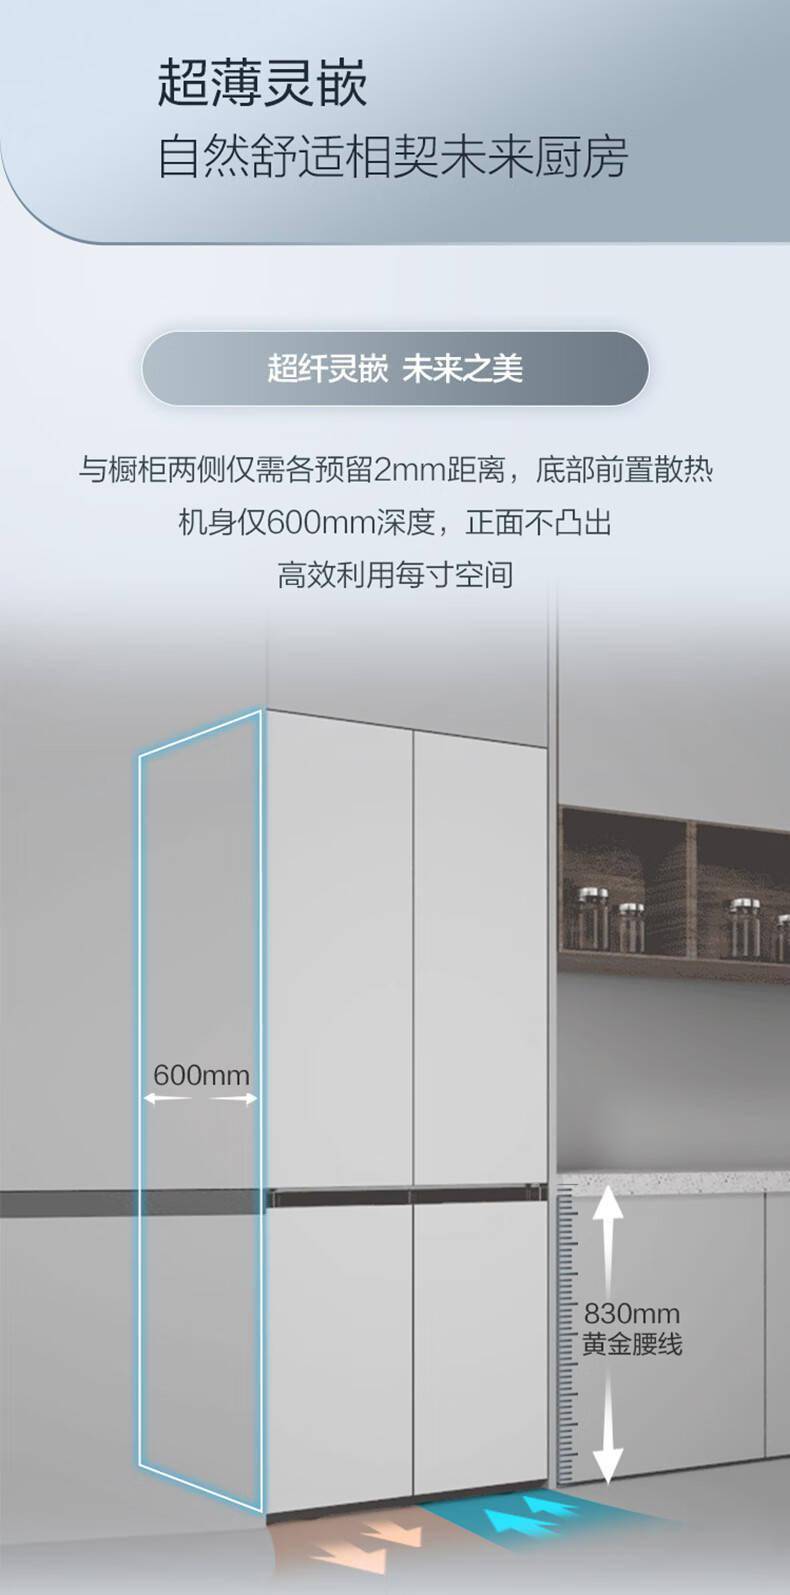 三星推出 501L 嵌入式十字四开门冰箱： 600mm 超薄平嵌 